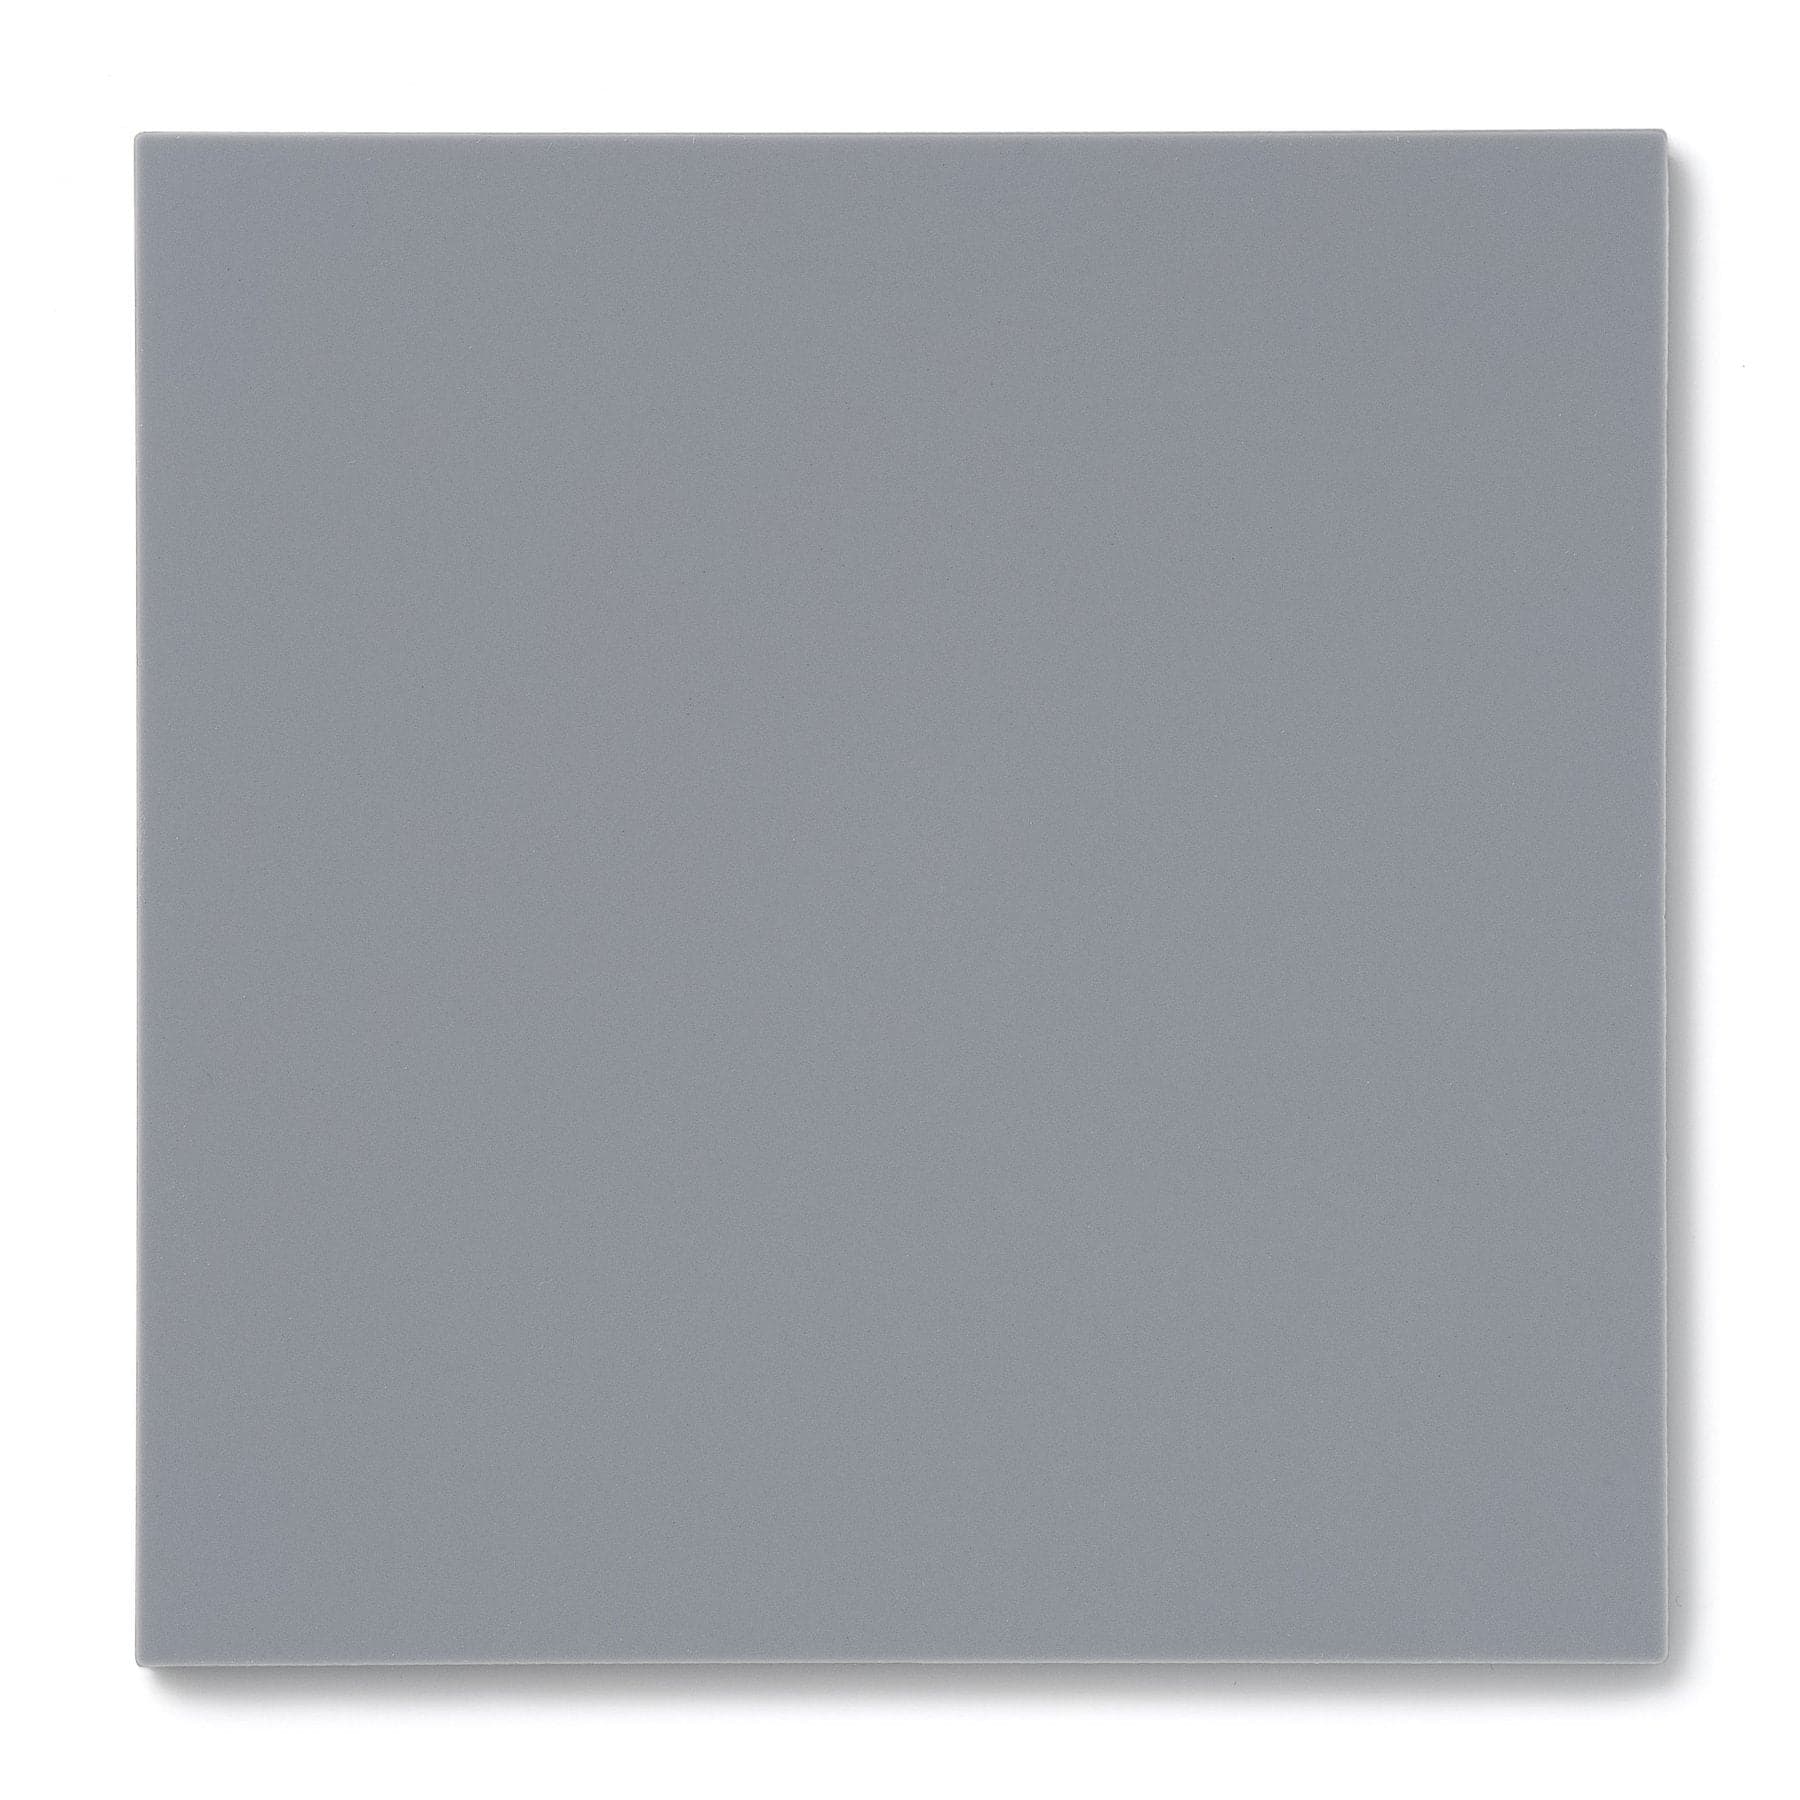 Acrylic Sheet 1/8" Gray Opaque #5040